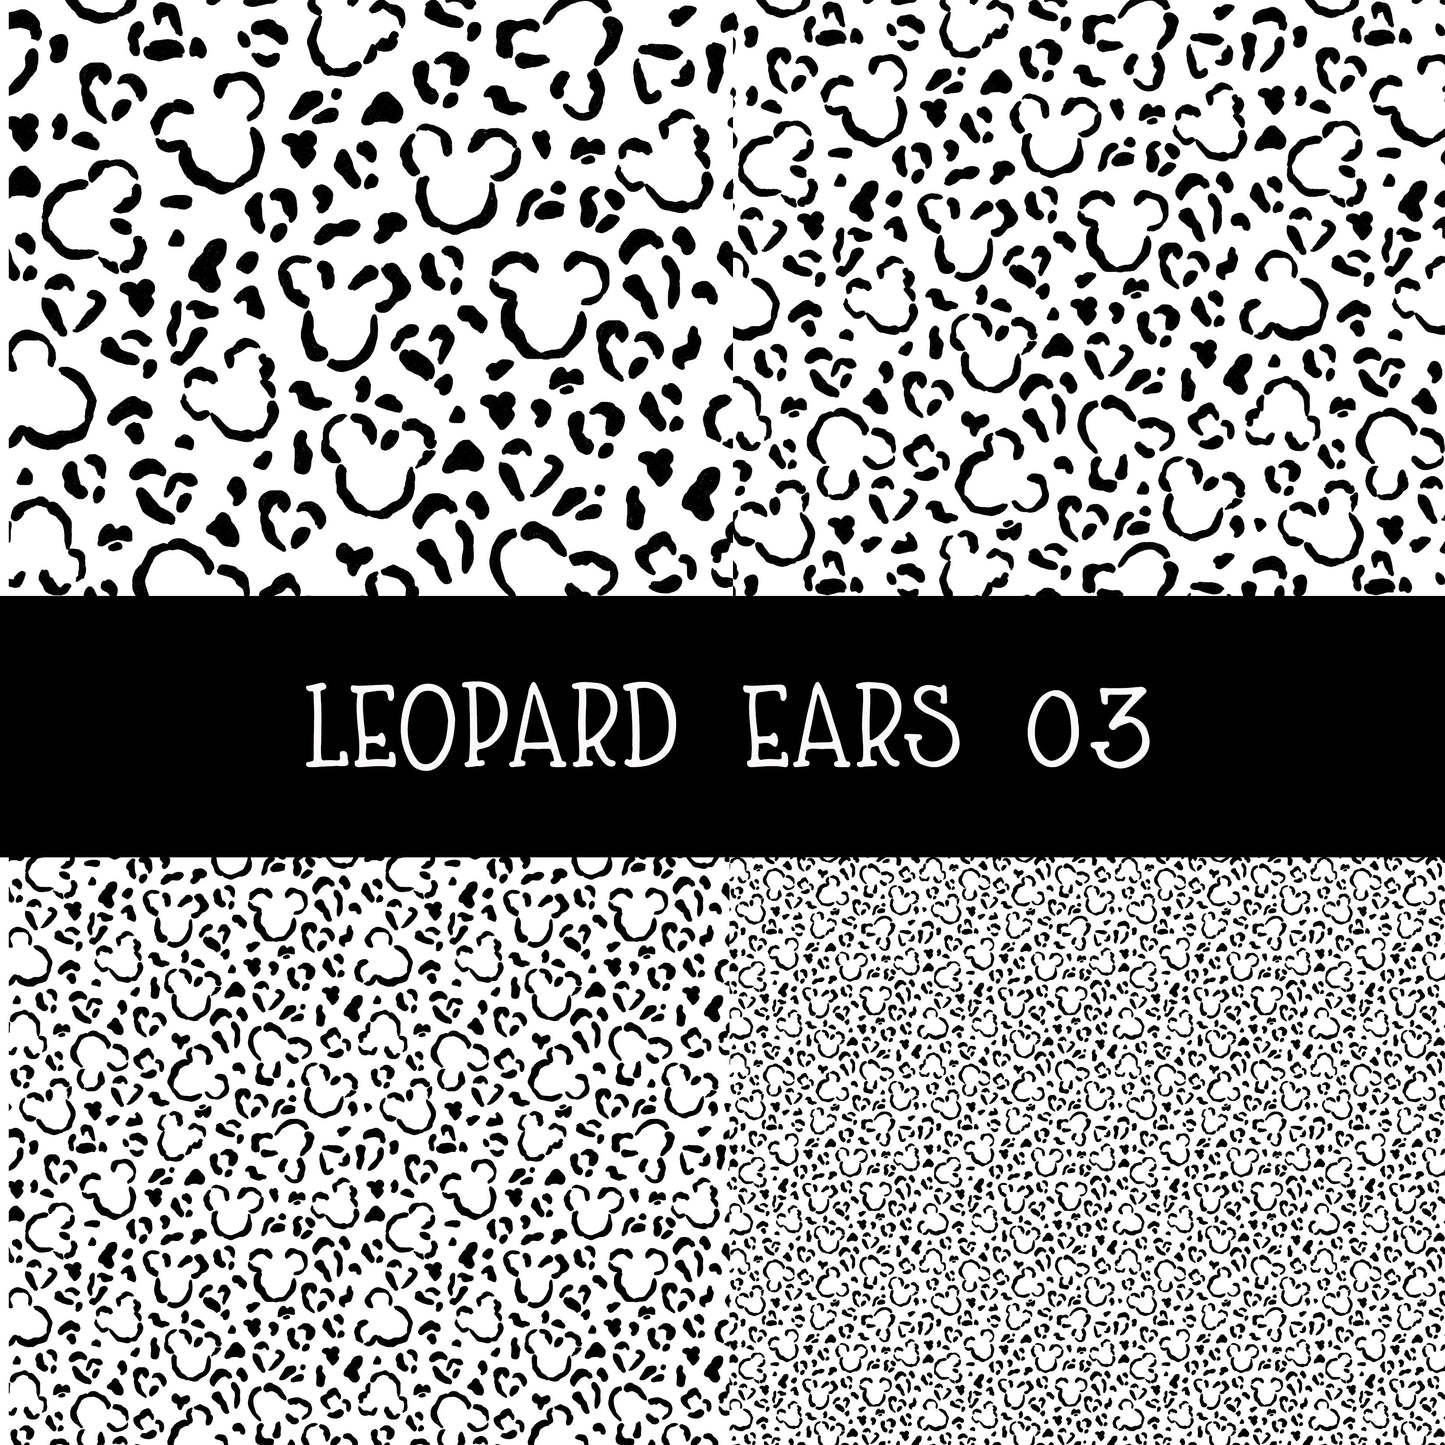 Leopard Ears 03